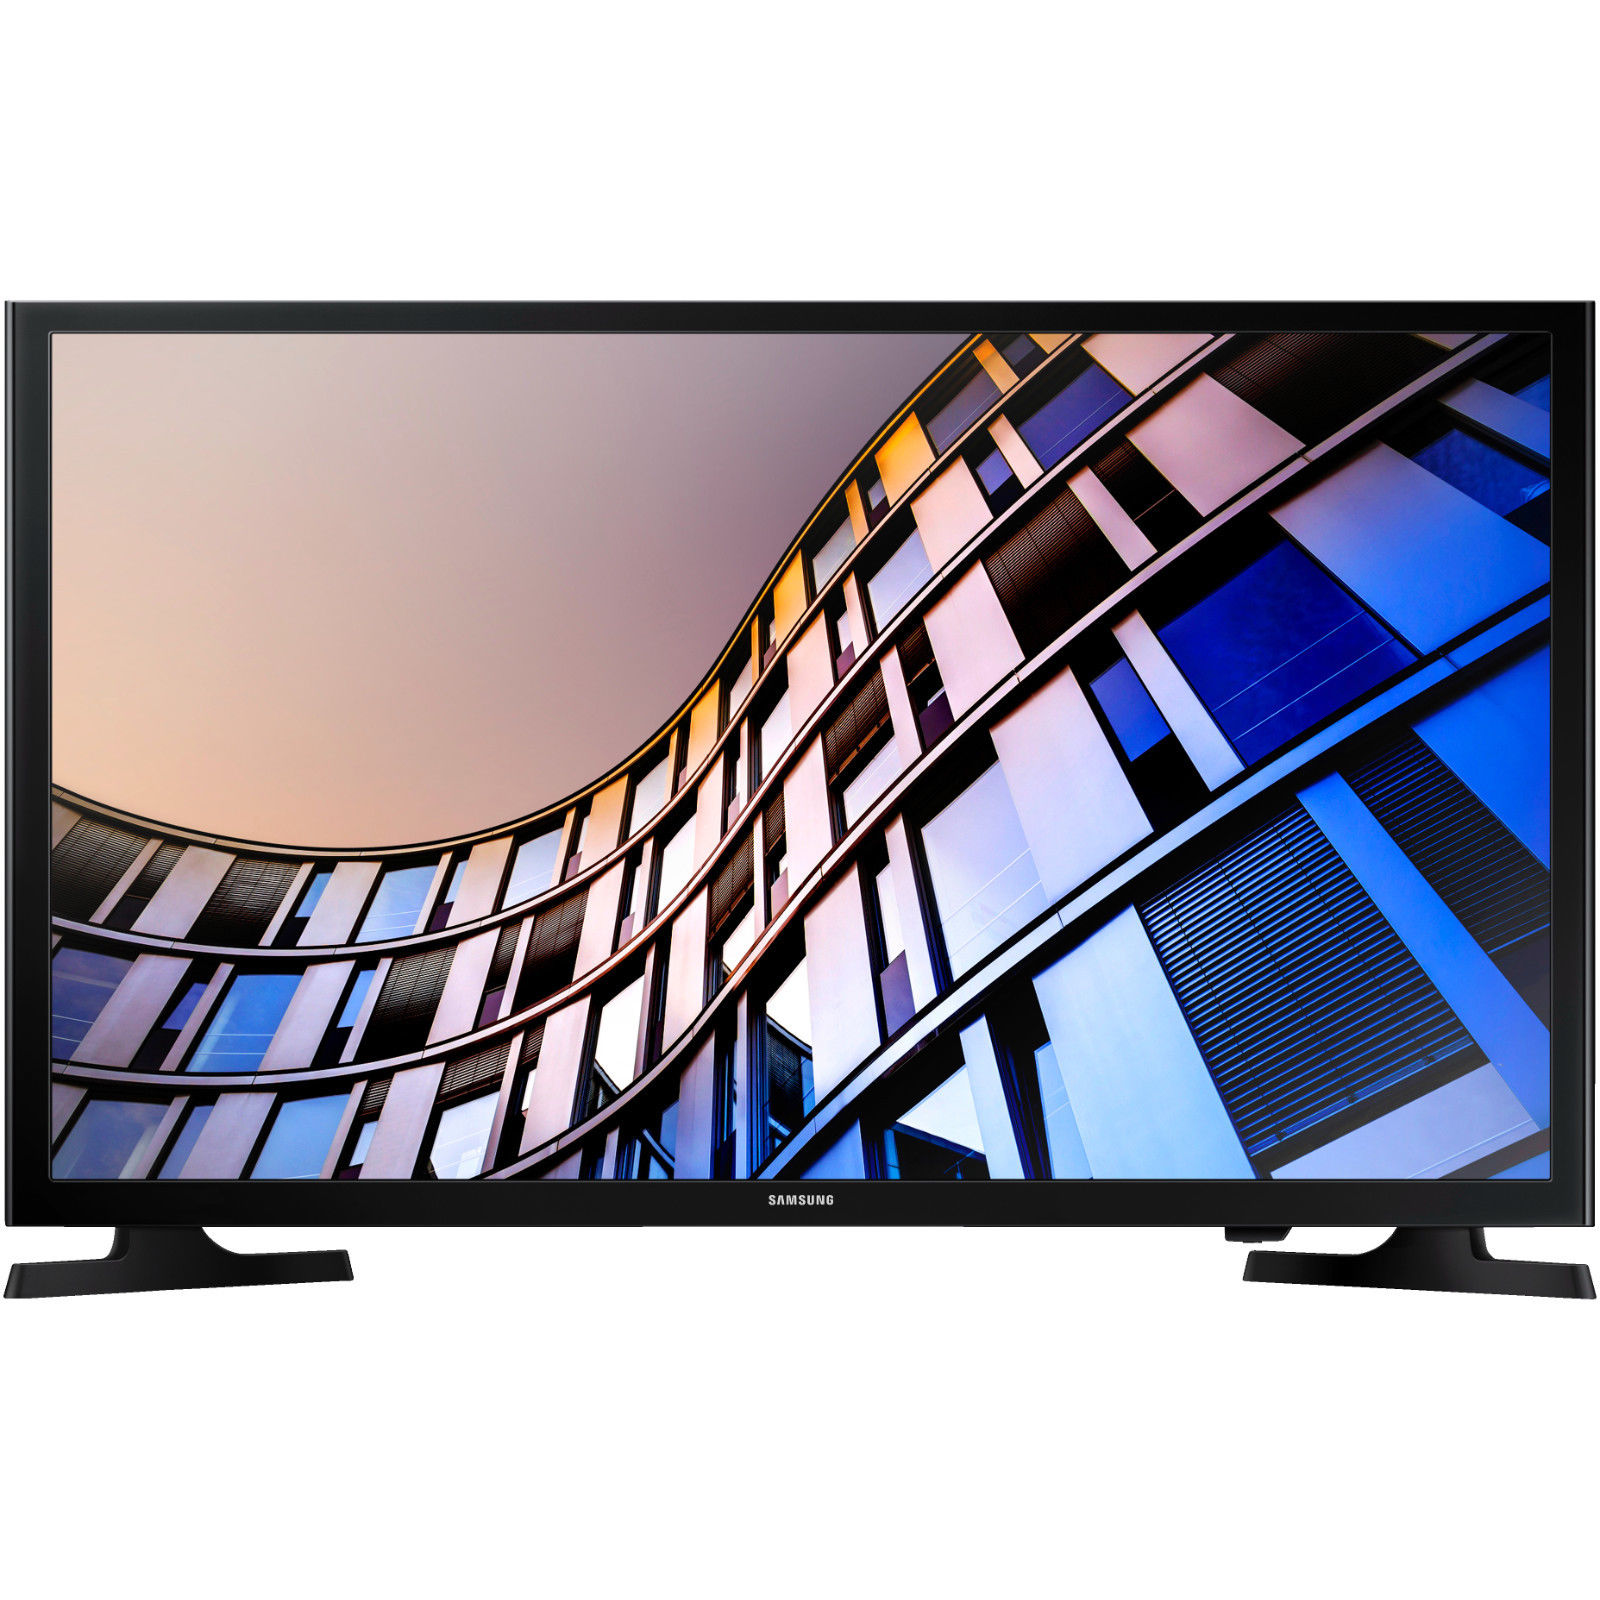 Bild zu 32 Zoll LED-Fernseher Samsung UE32M4005AKXXC für 144€